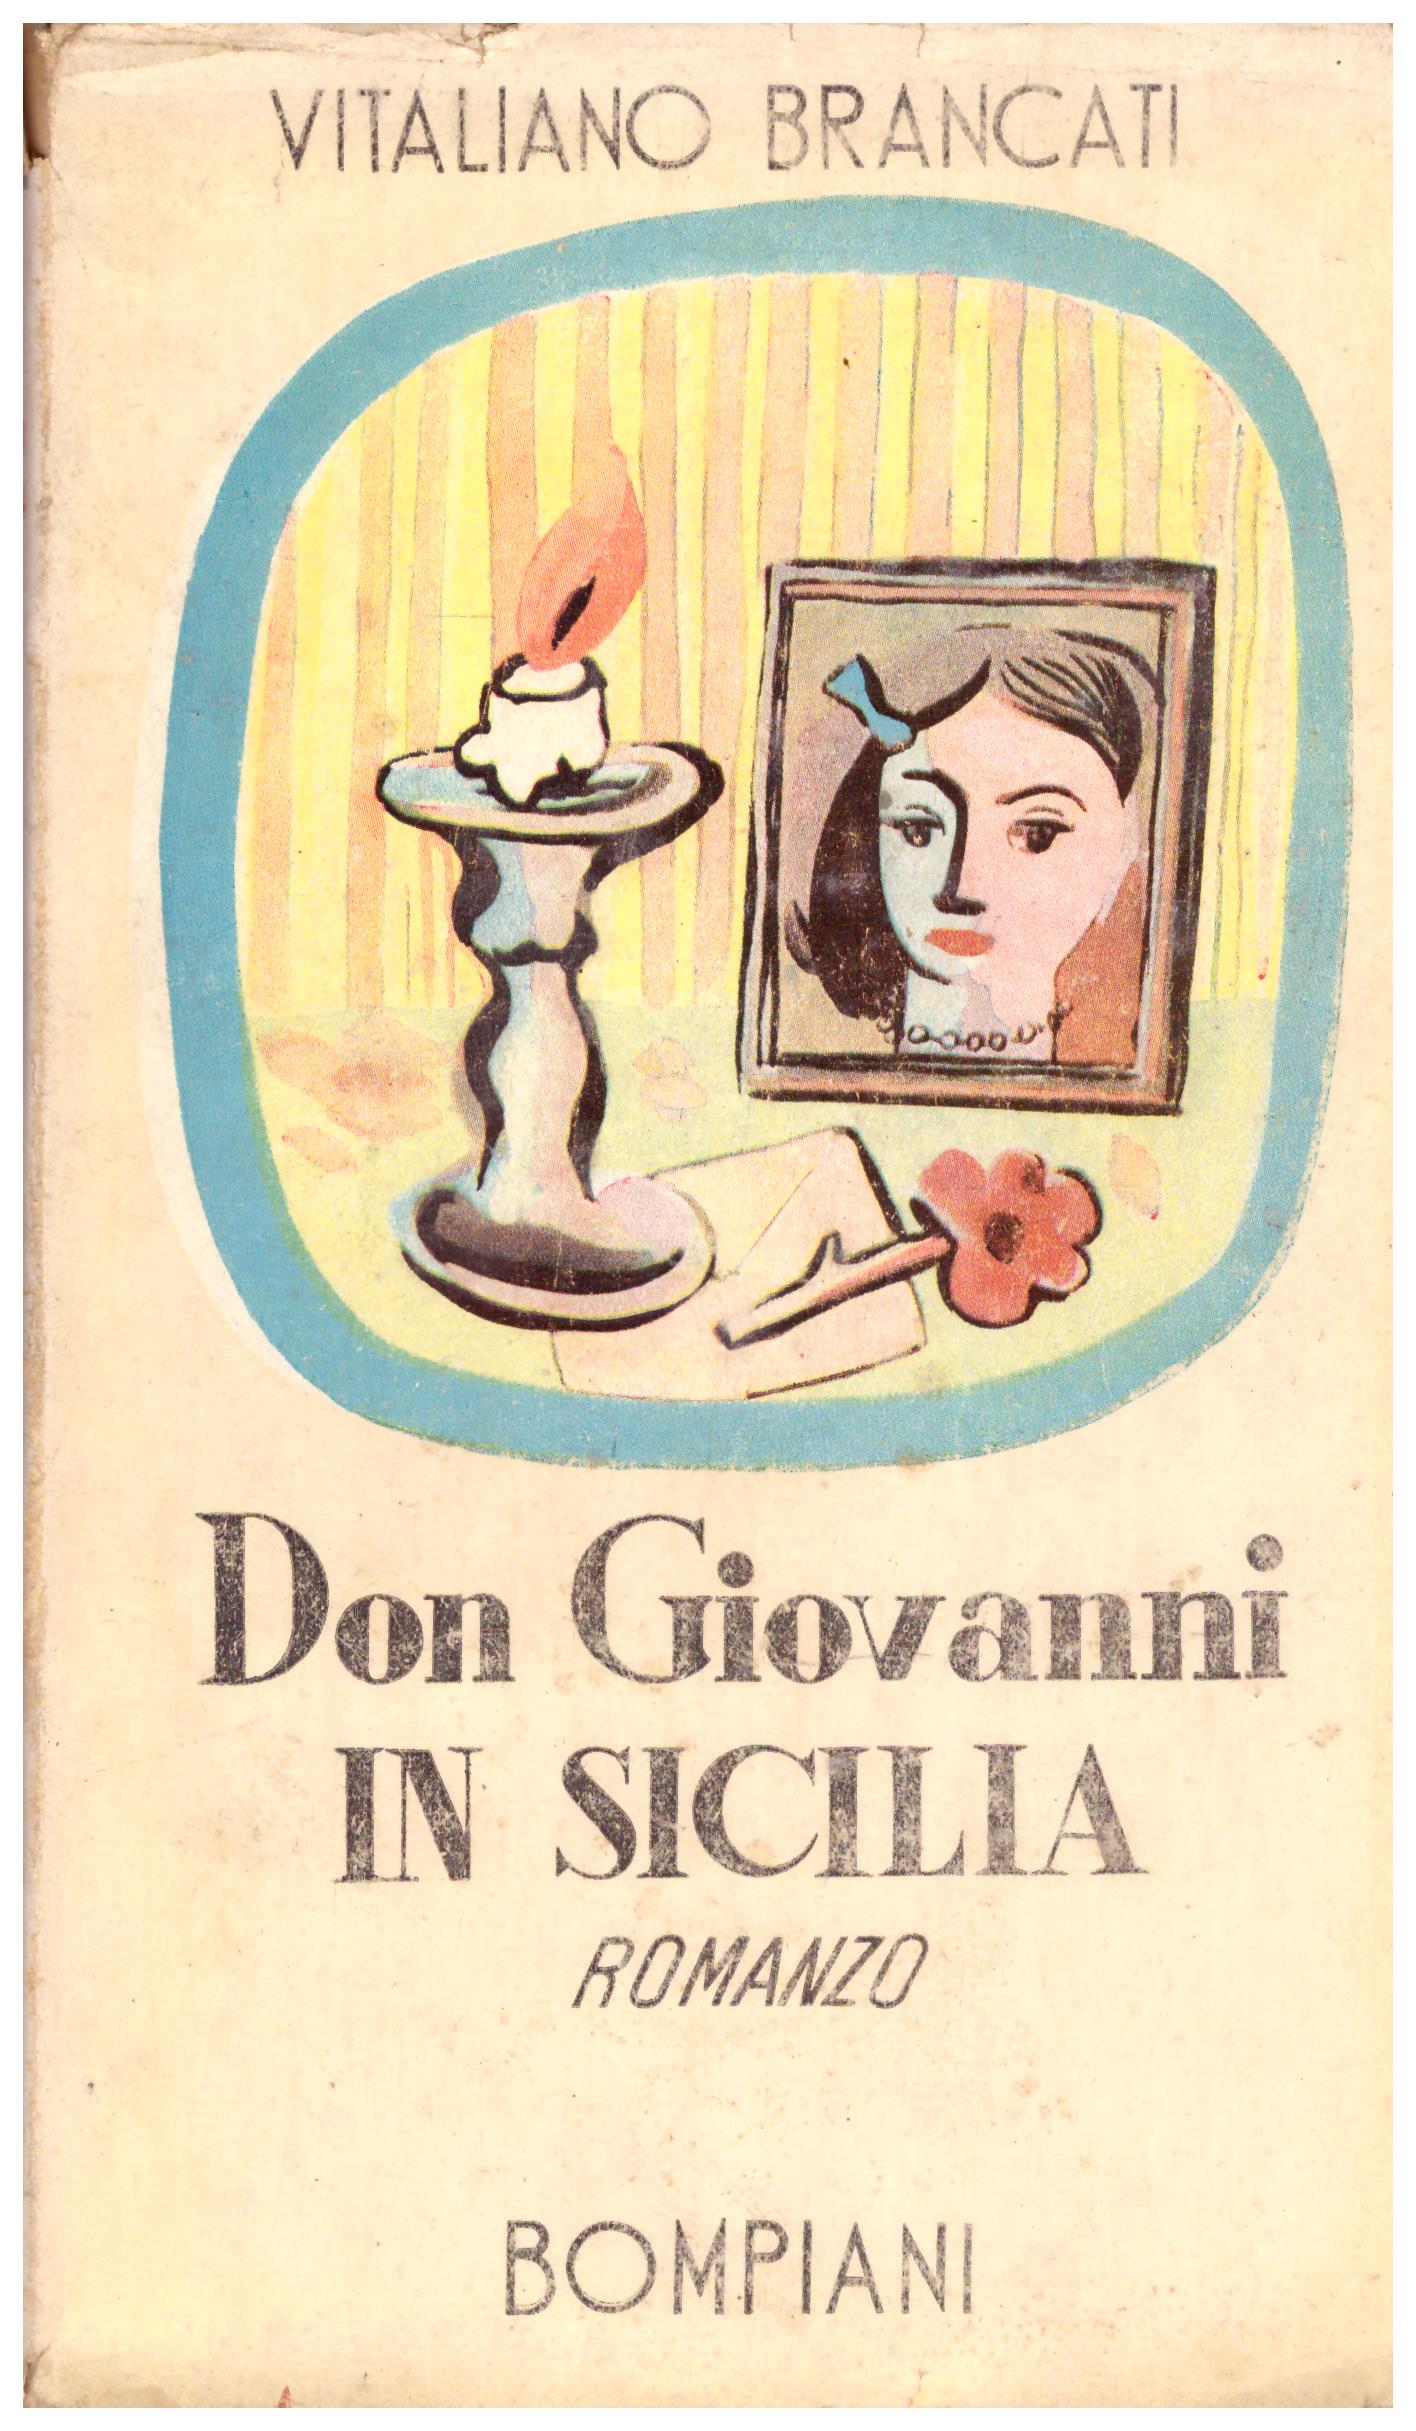 Titolo: Don Giovanni in sicilia Autore: Vitaliano Brancati Editore: Bompiani, 1944